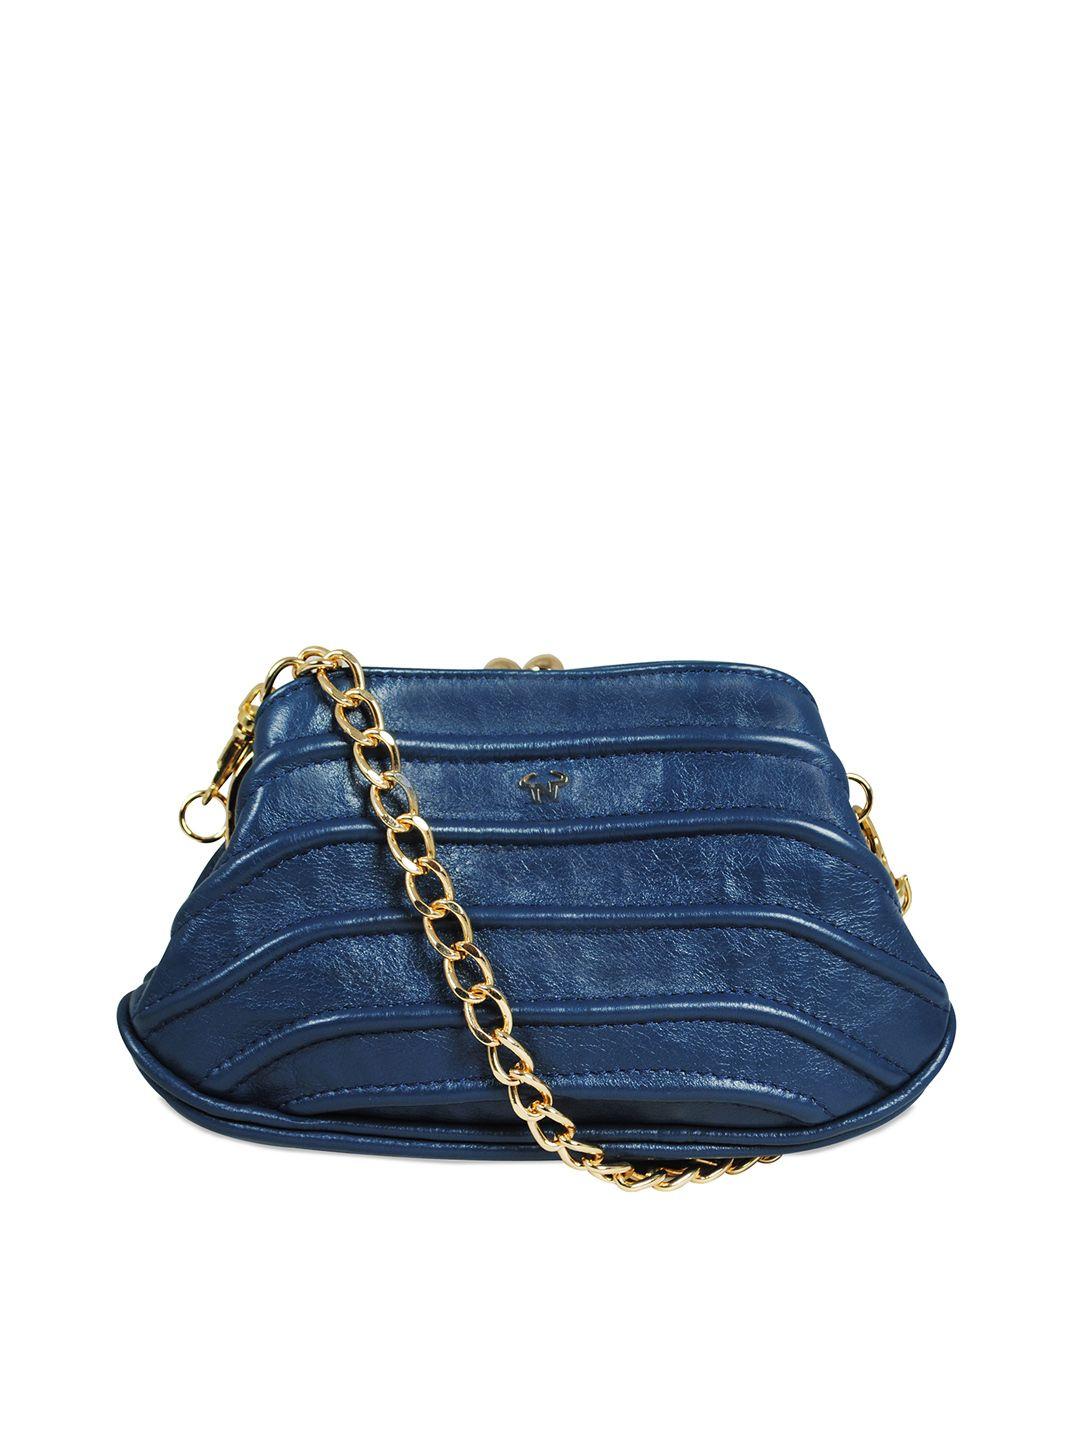 calfnero navy blue textured purse clutch